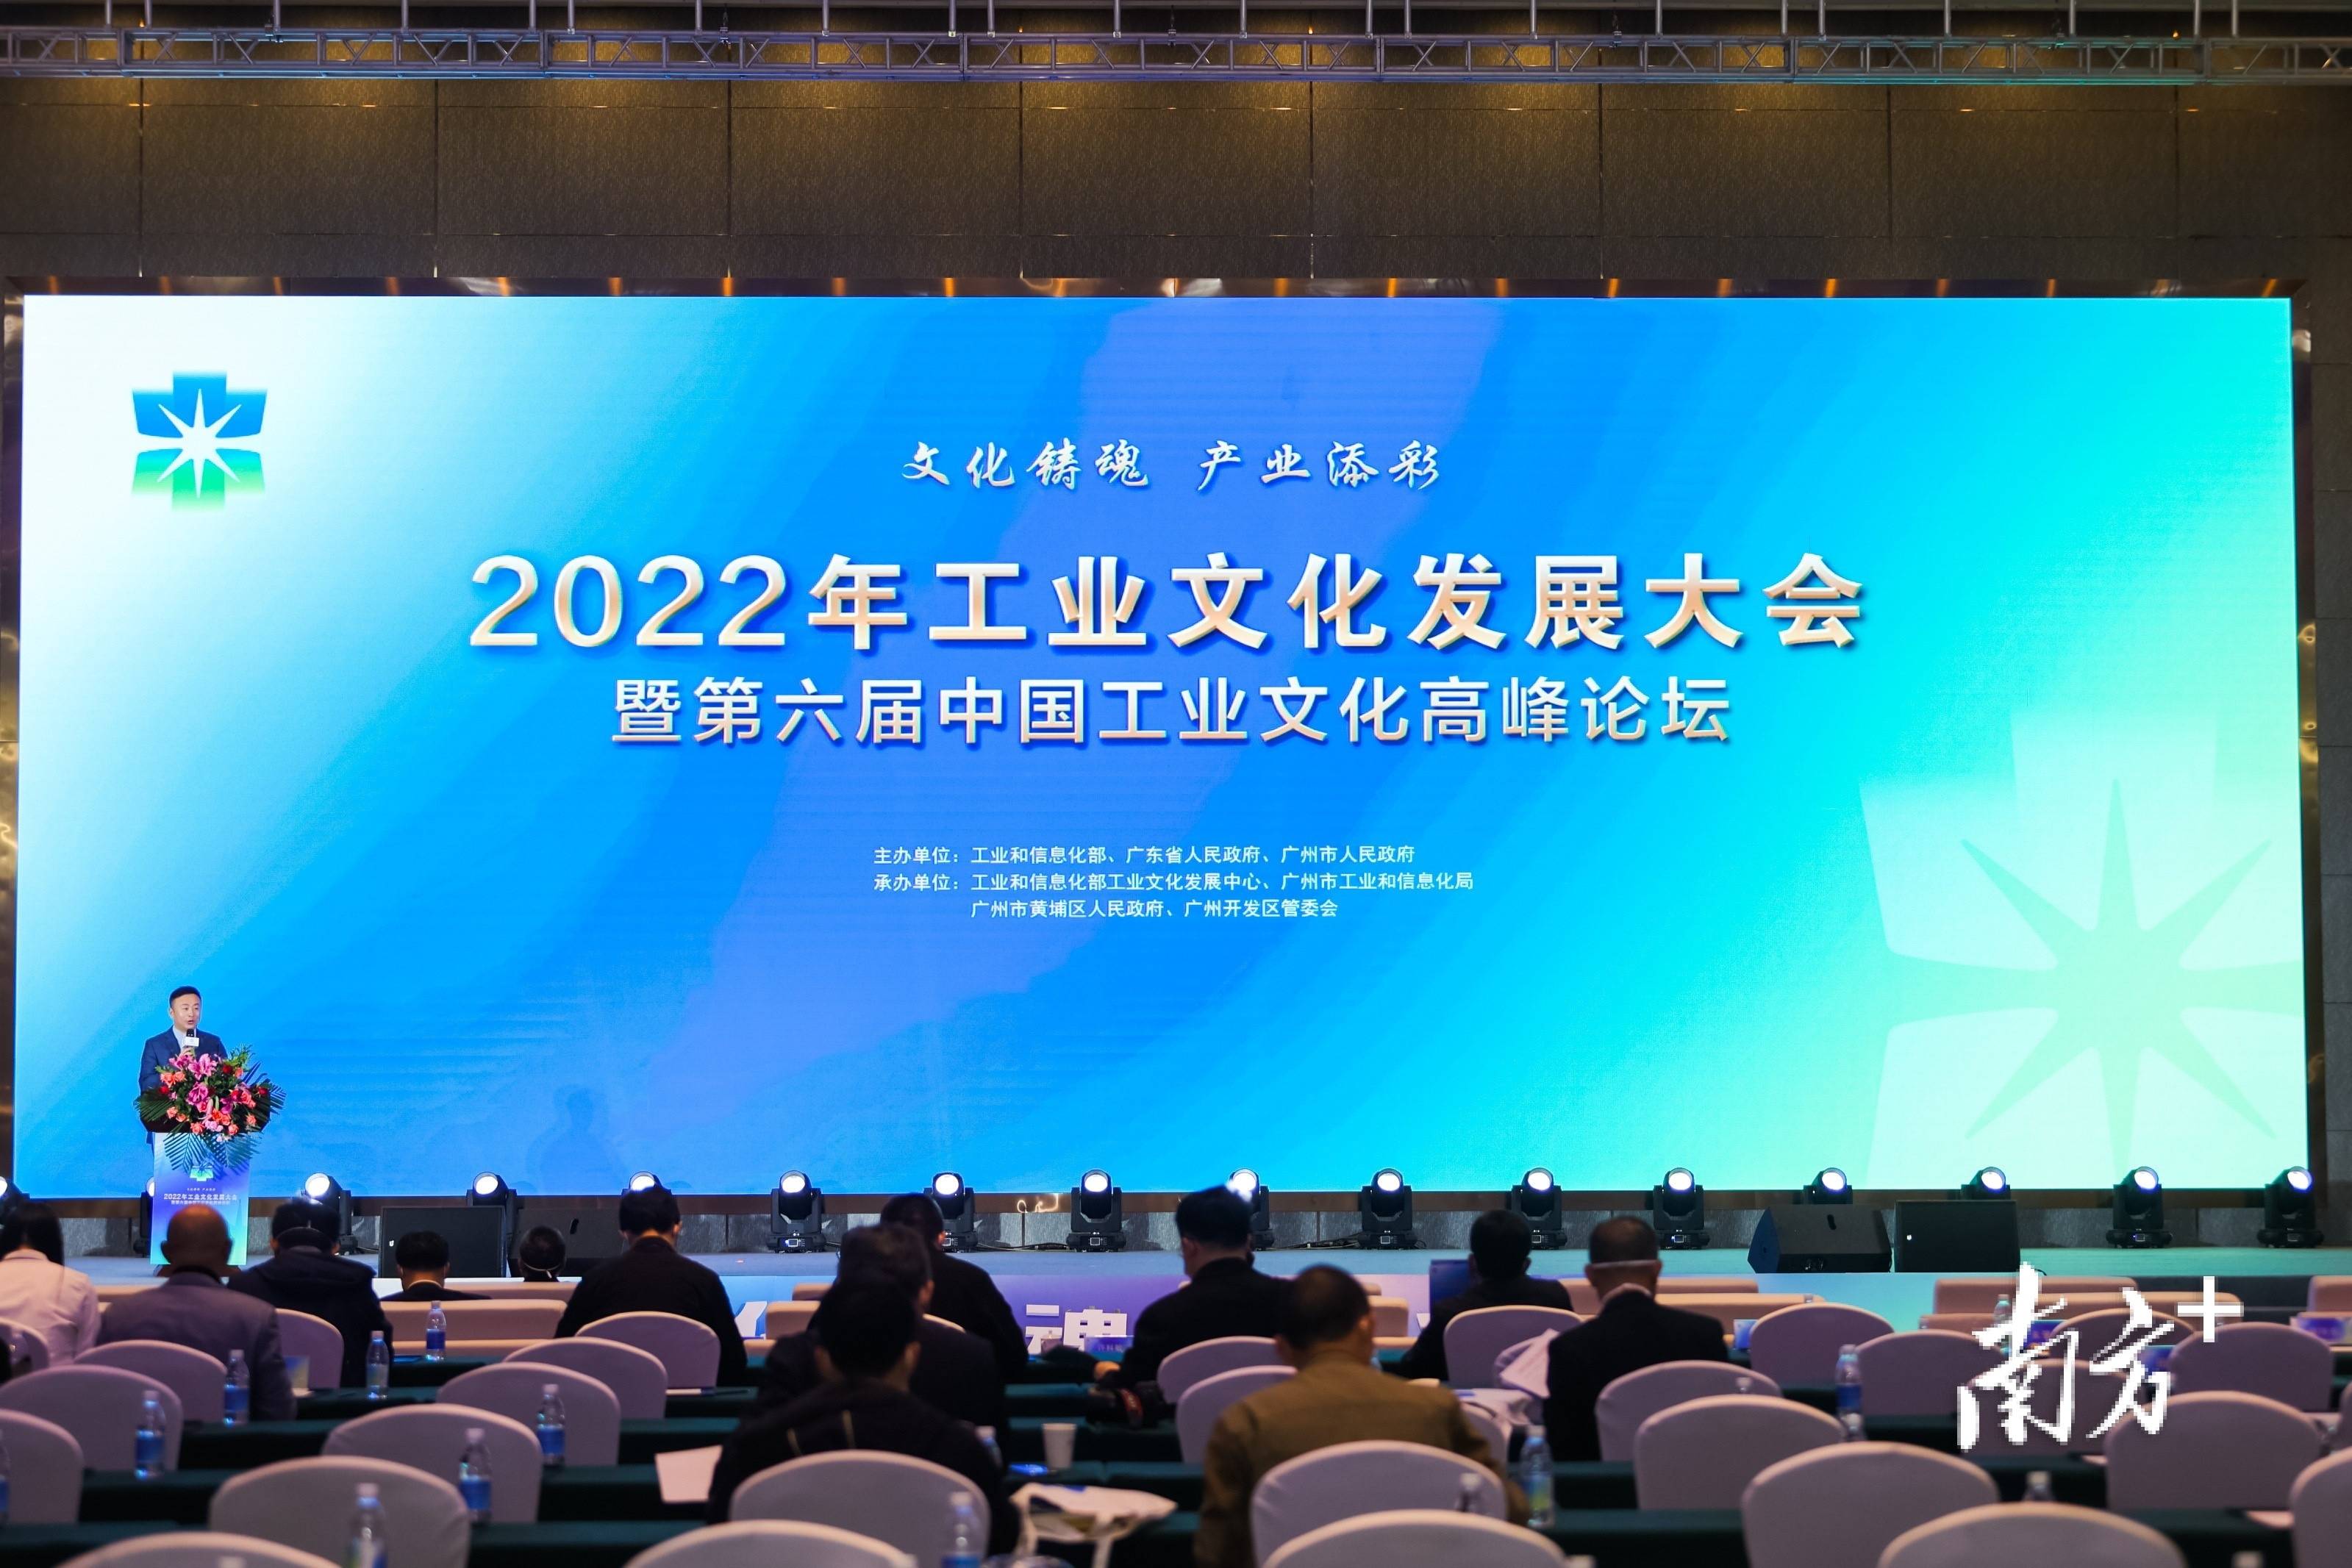 国内首场省部市联办工业文化大会在广州举行